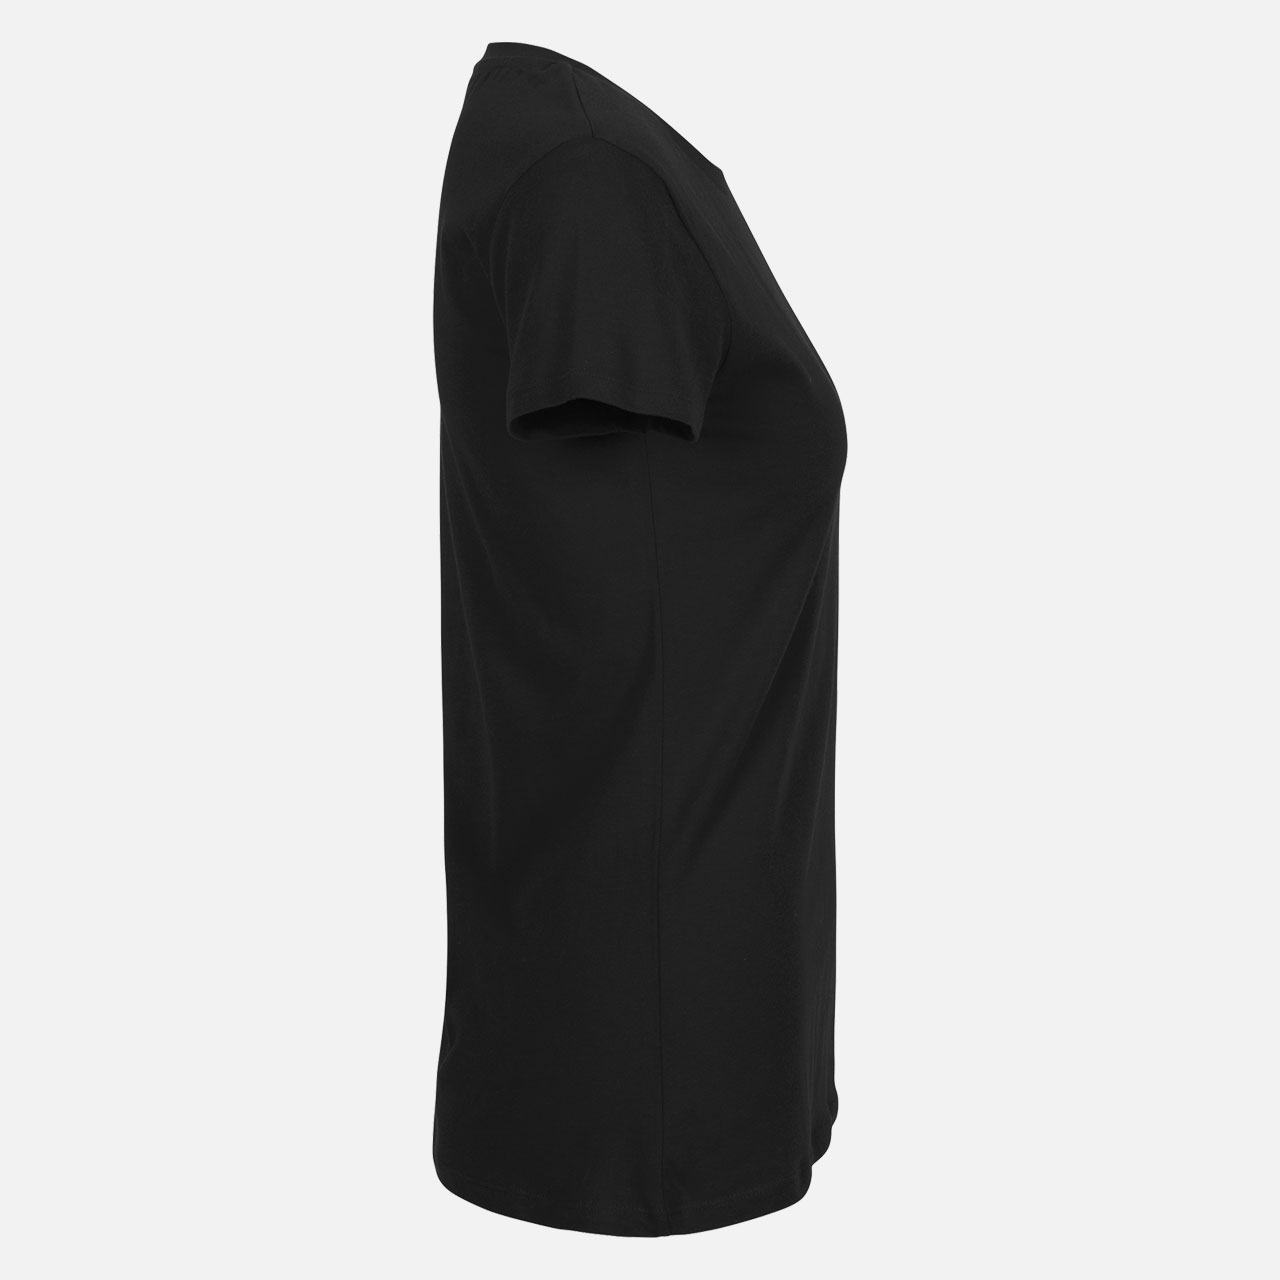 Neutral® Ladies Fit T-Shirt - Bio-Baumwolle Black Schwarz S